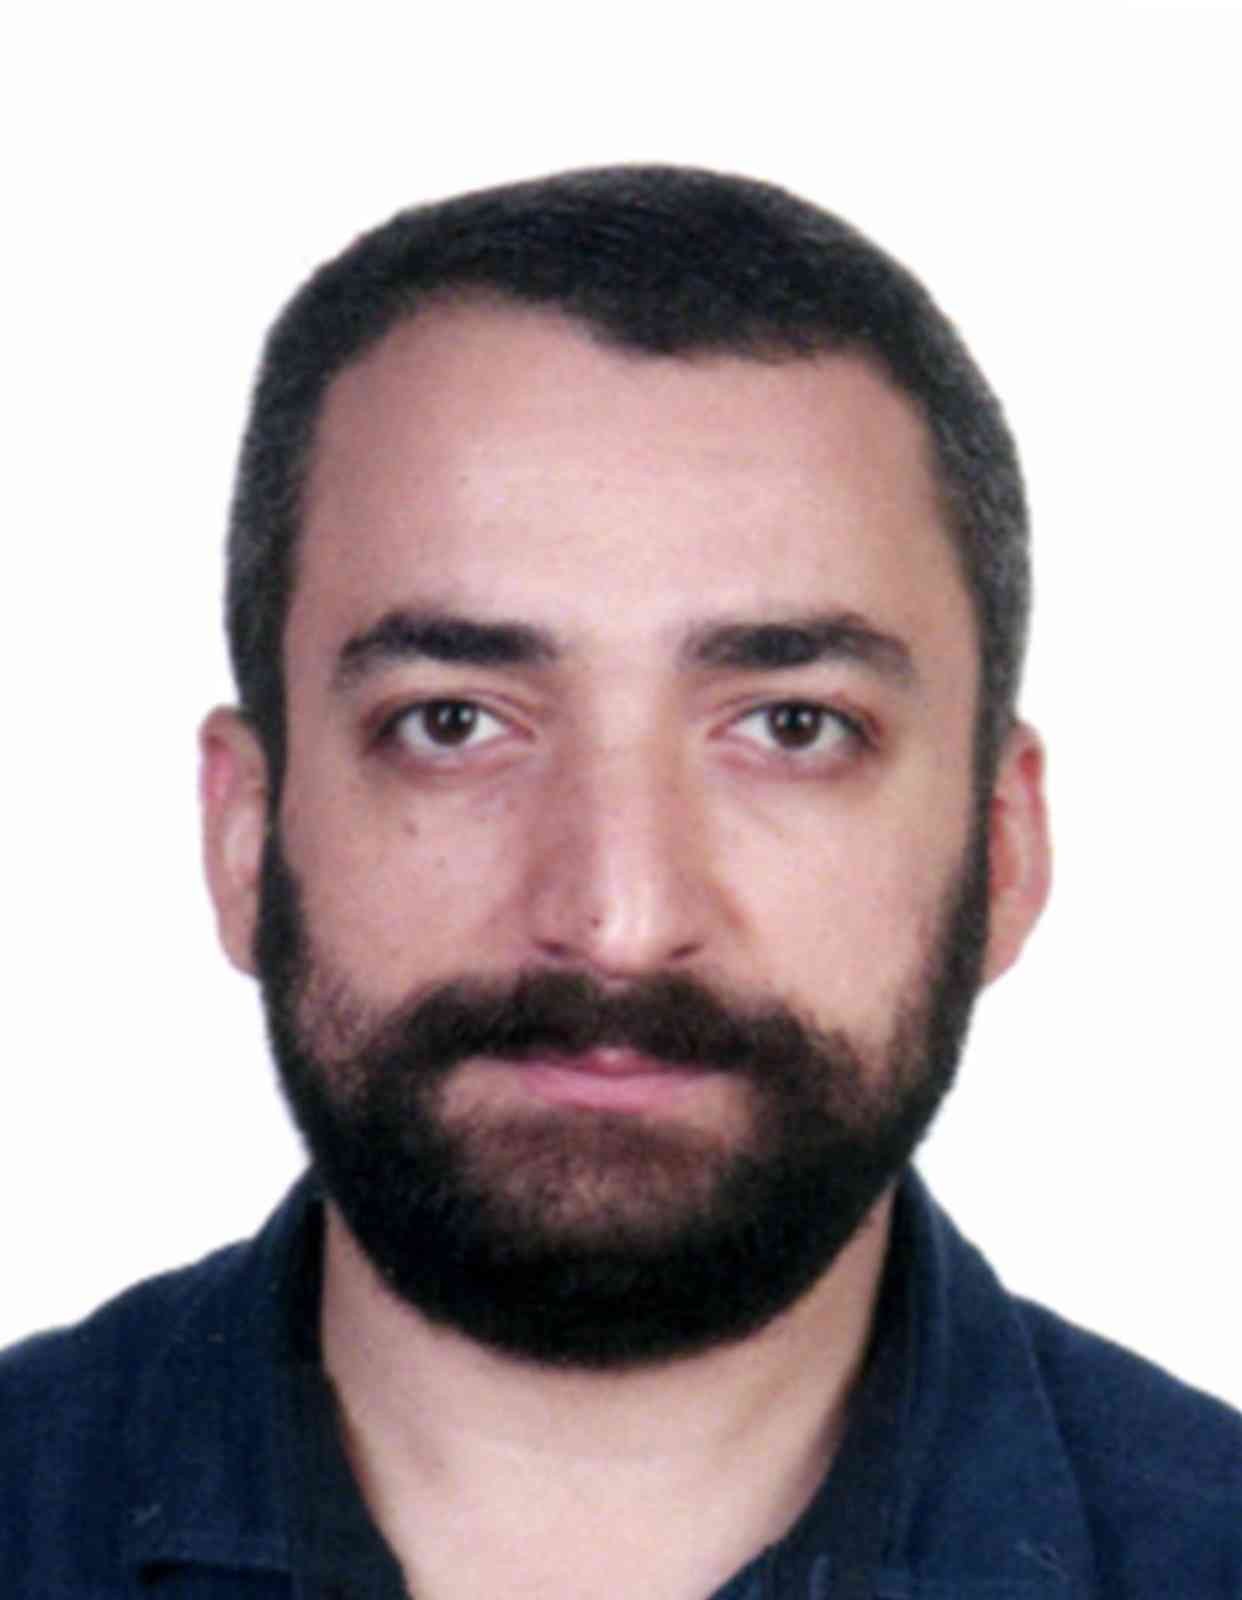 FETÖ’nün elebaşı Fetullah Gülen’in yeğeni yakalandı #istanbul